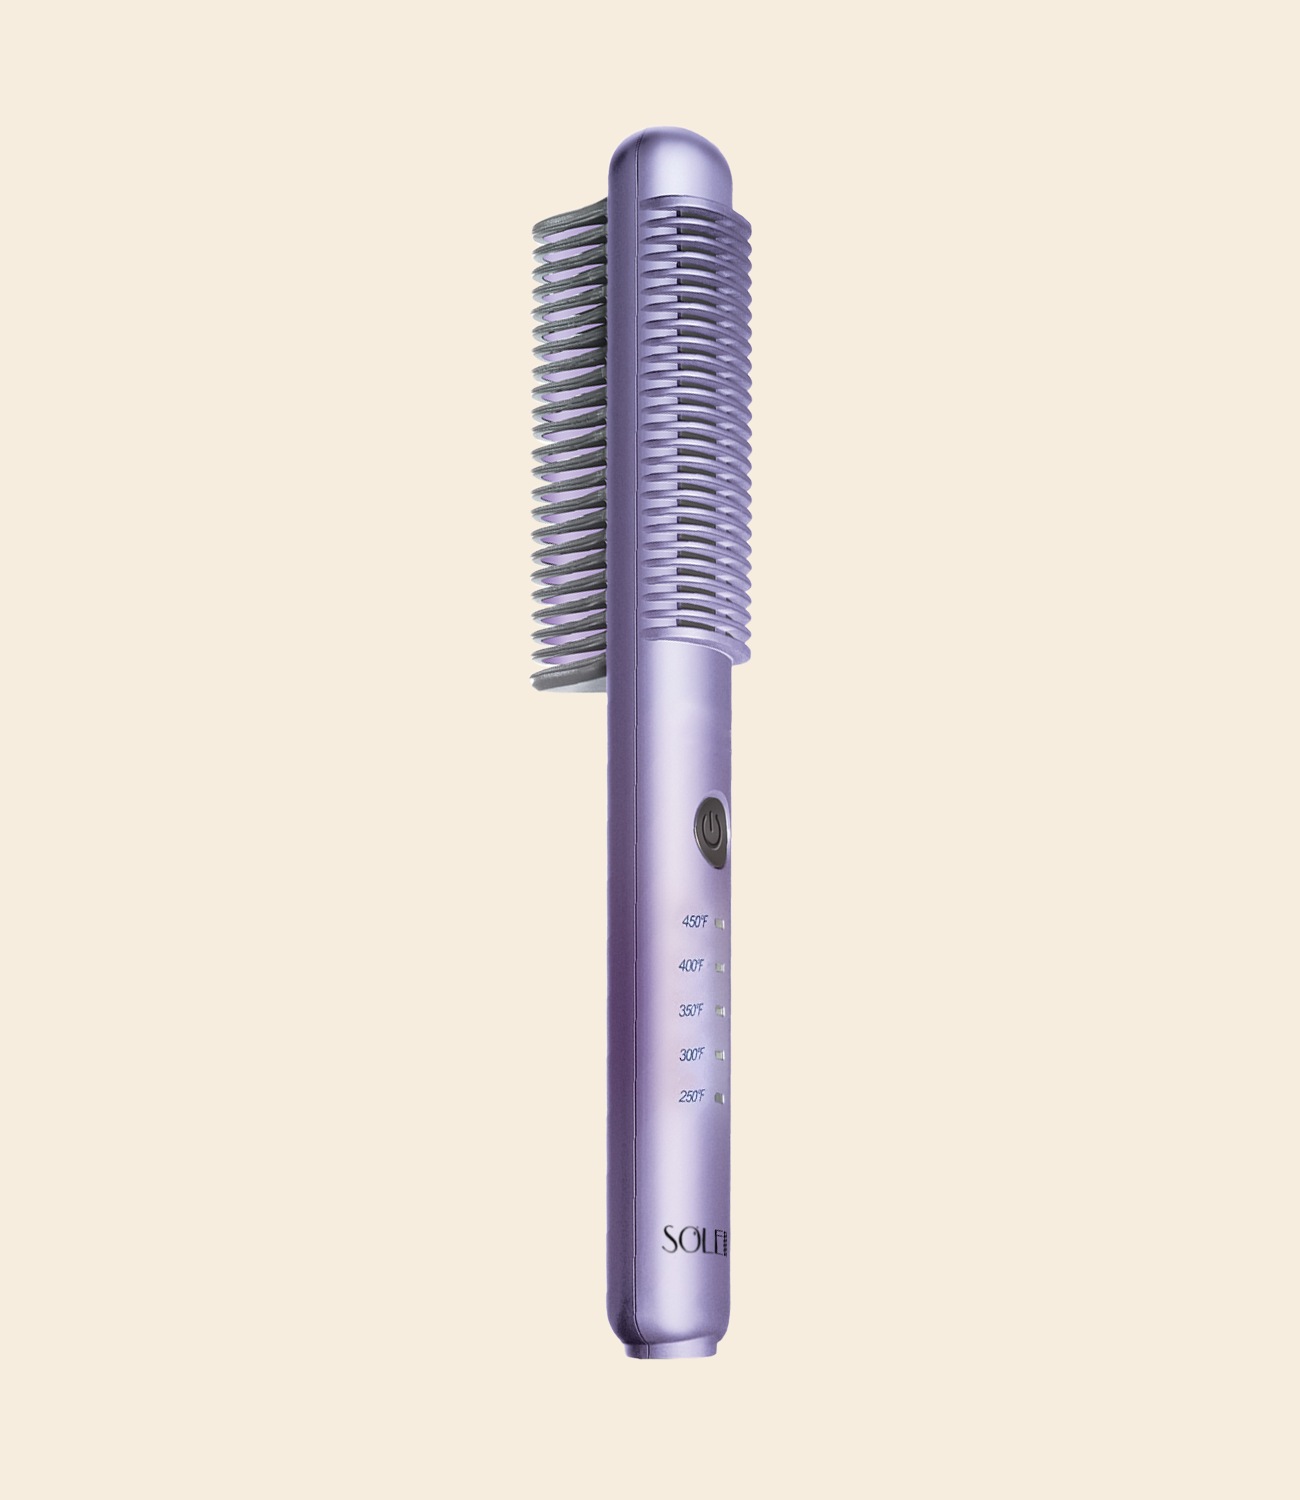 Salon tools: Comb Cleaner